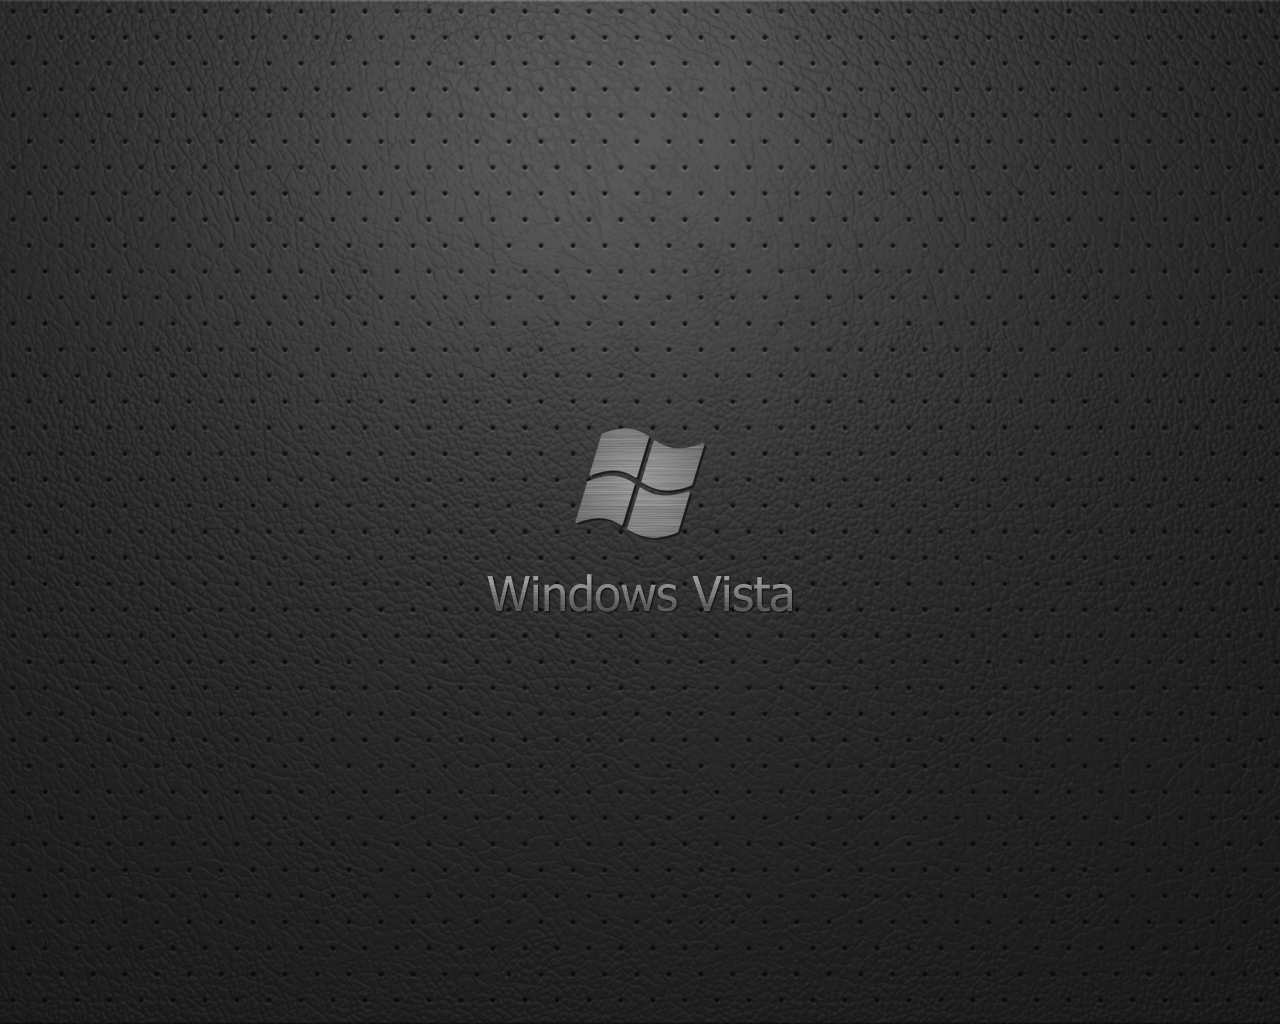 http://fc00.deviantart.net/fs40/f/2009/017/9/8/Windows_Vista_Wallpaper_Al_L_by_androidlviv.png